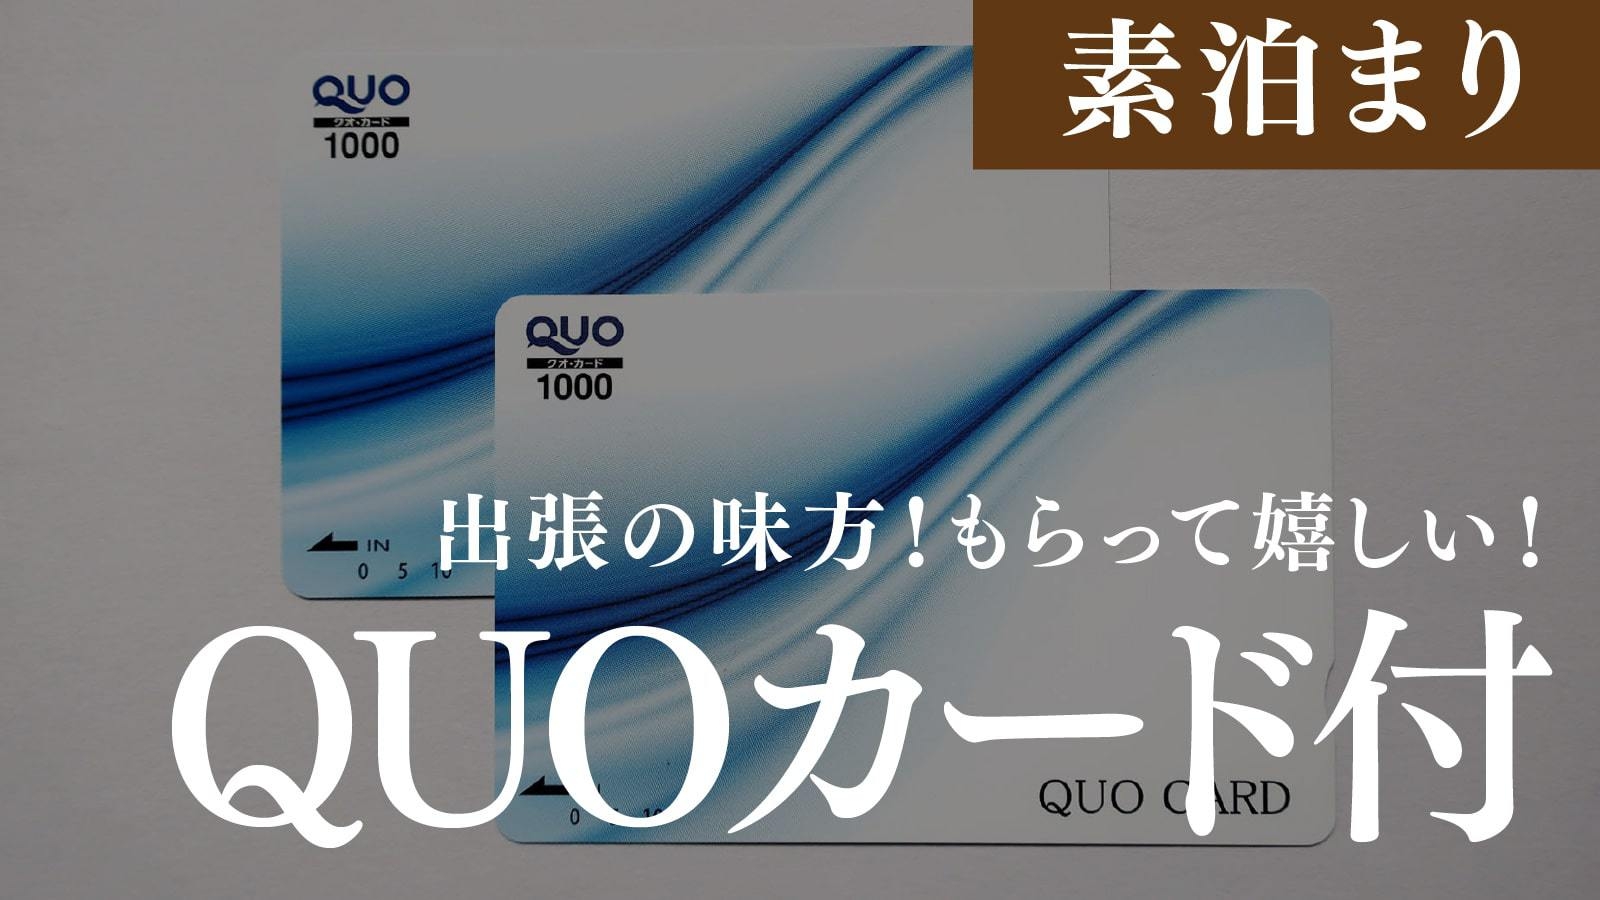 【自分へのご褒美】QUOカード1000円付きプランで出張をサポート♪《朝食なし》